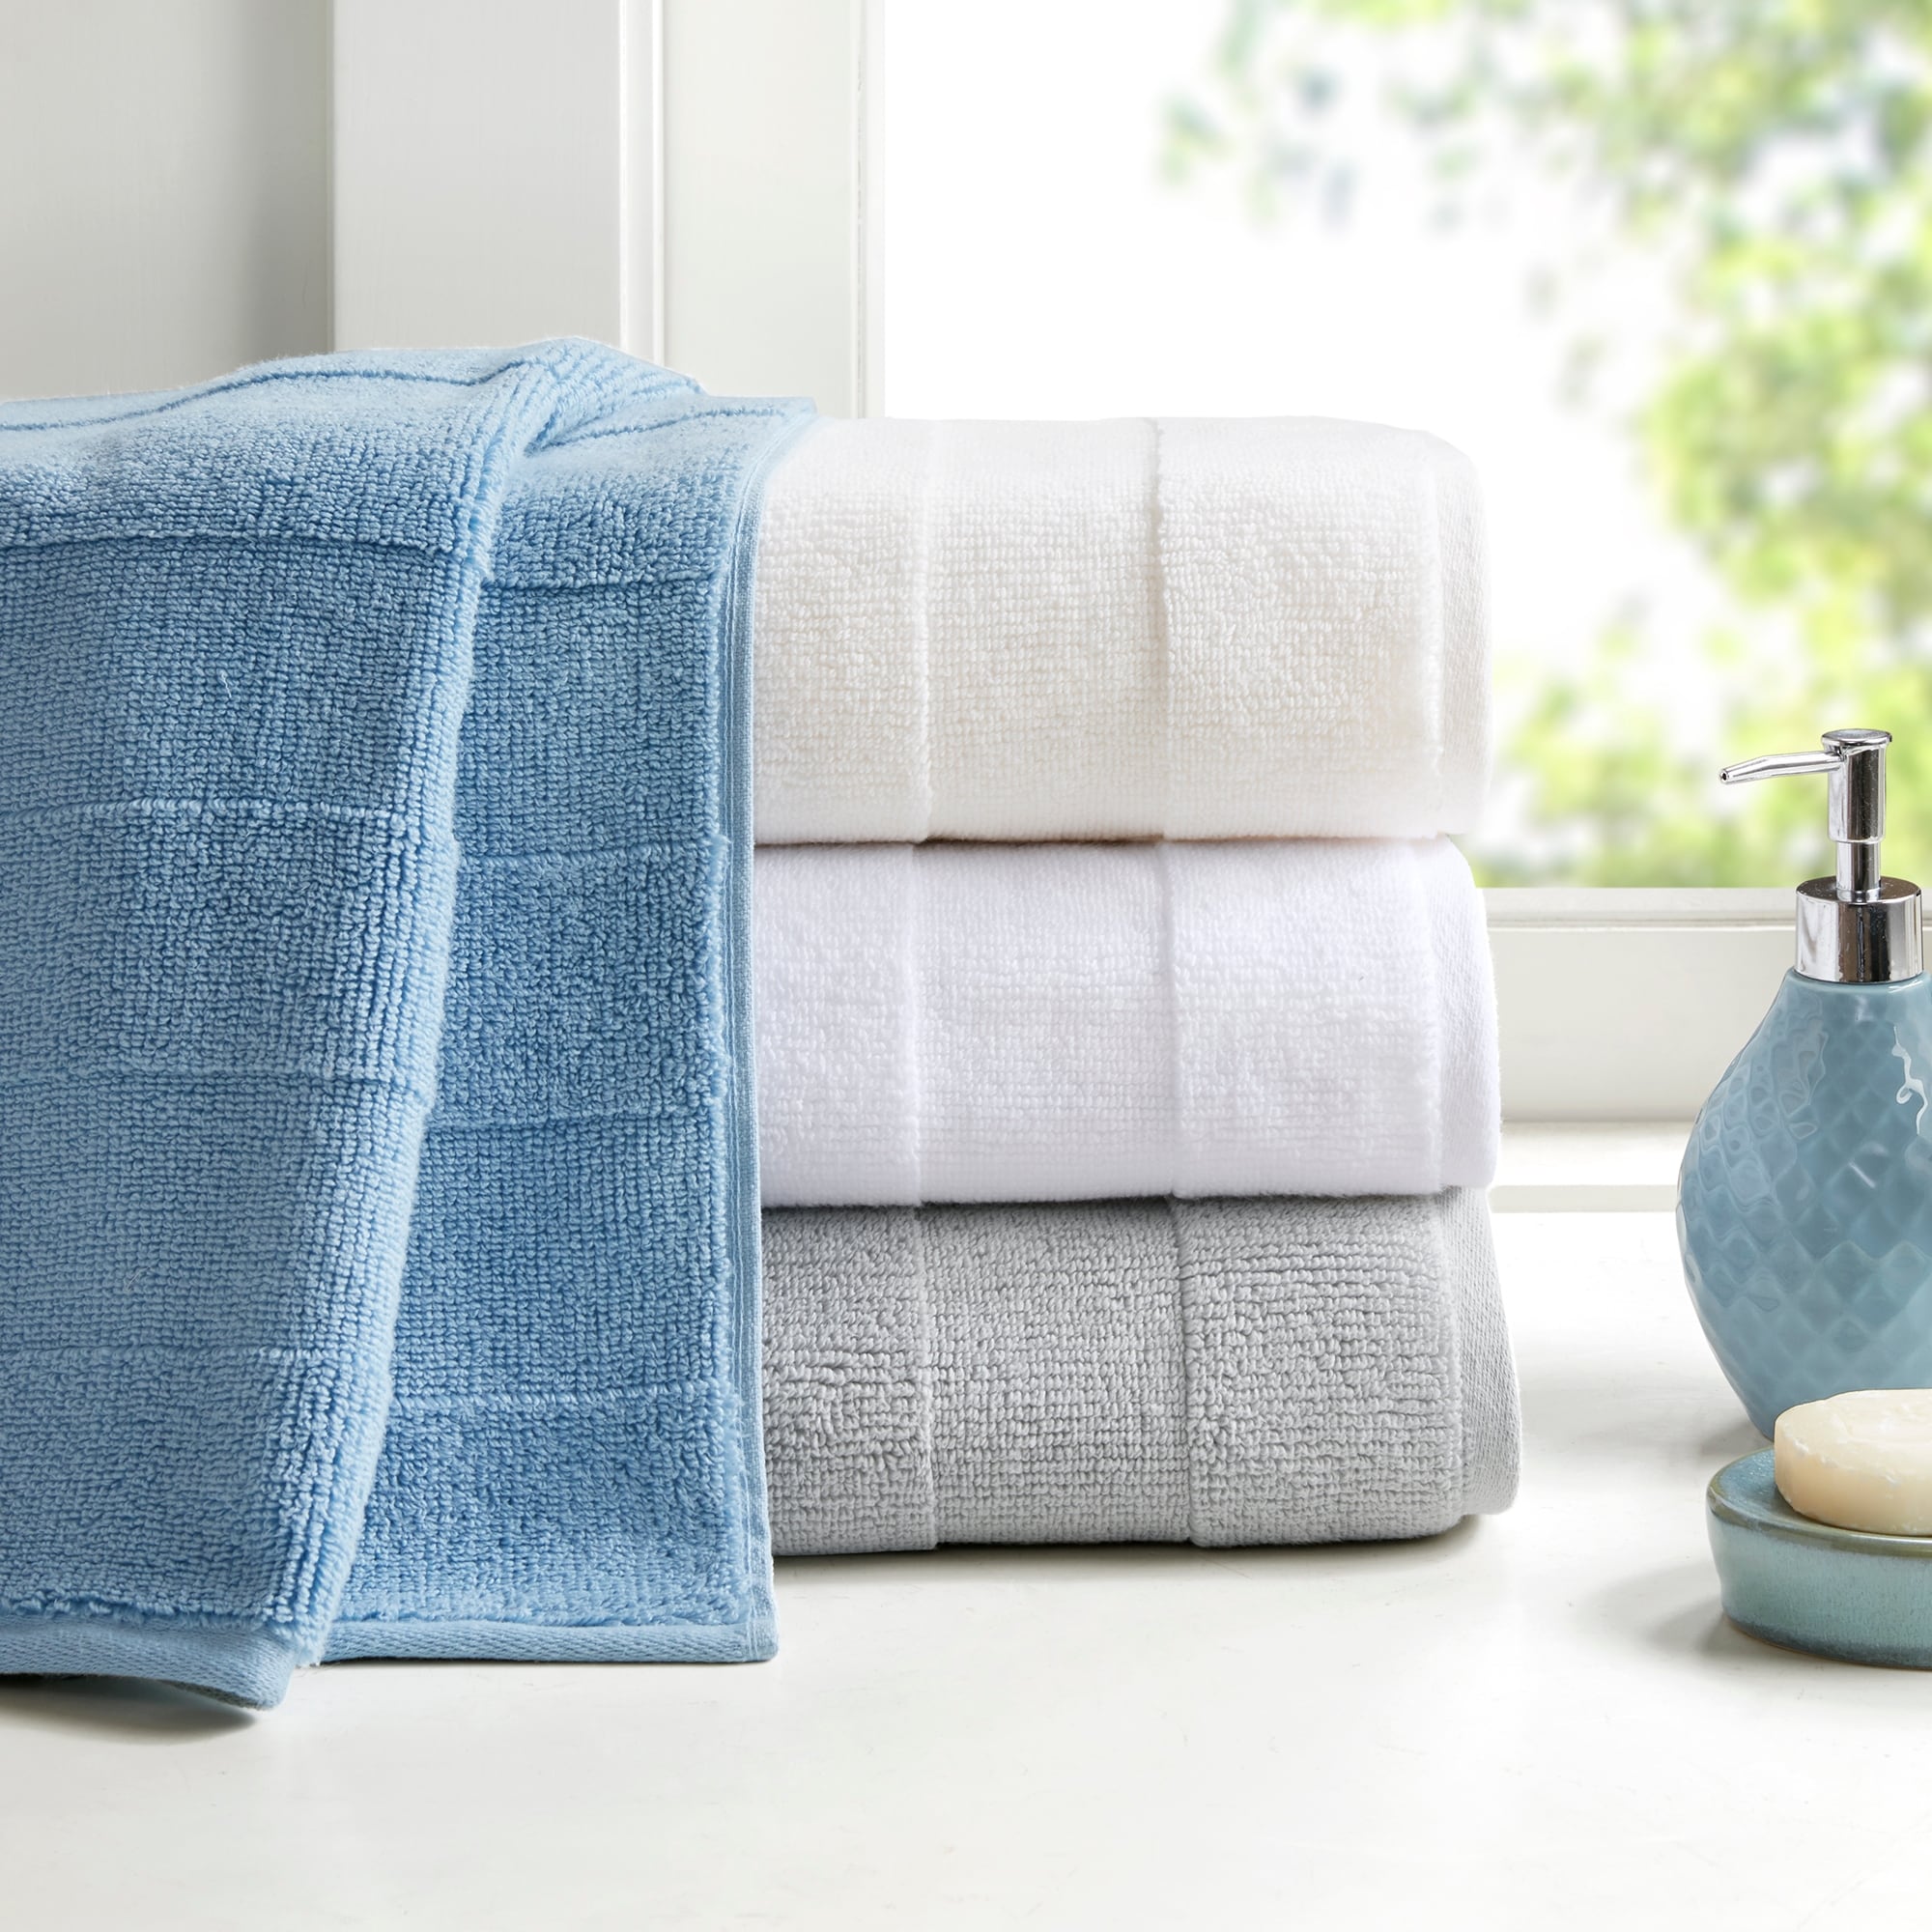 Набор полотенец хлопок. Набор полотенец для ванной. New Towel полотенце. Белое кухонное полотенце. Полотенце фронтально.